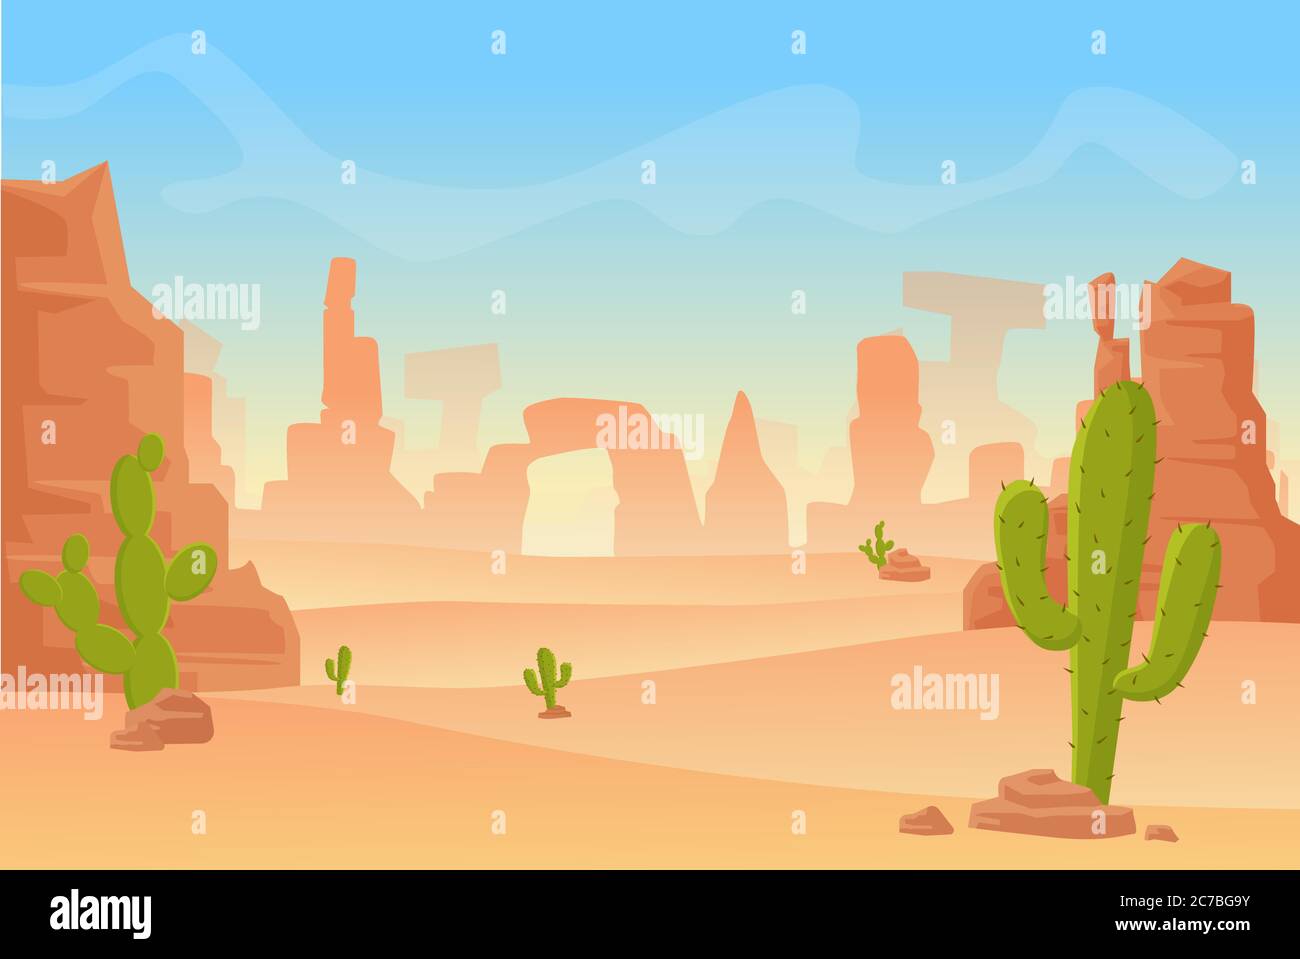 Illustrazione vettoriale cartoon della silhouette del Texas occidentale o del deserto messicano. Scena occidentale dell'America occidentale selvaggia con montagne e cactus nel deserto secco Illustrazione Vettoriale